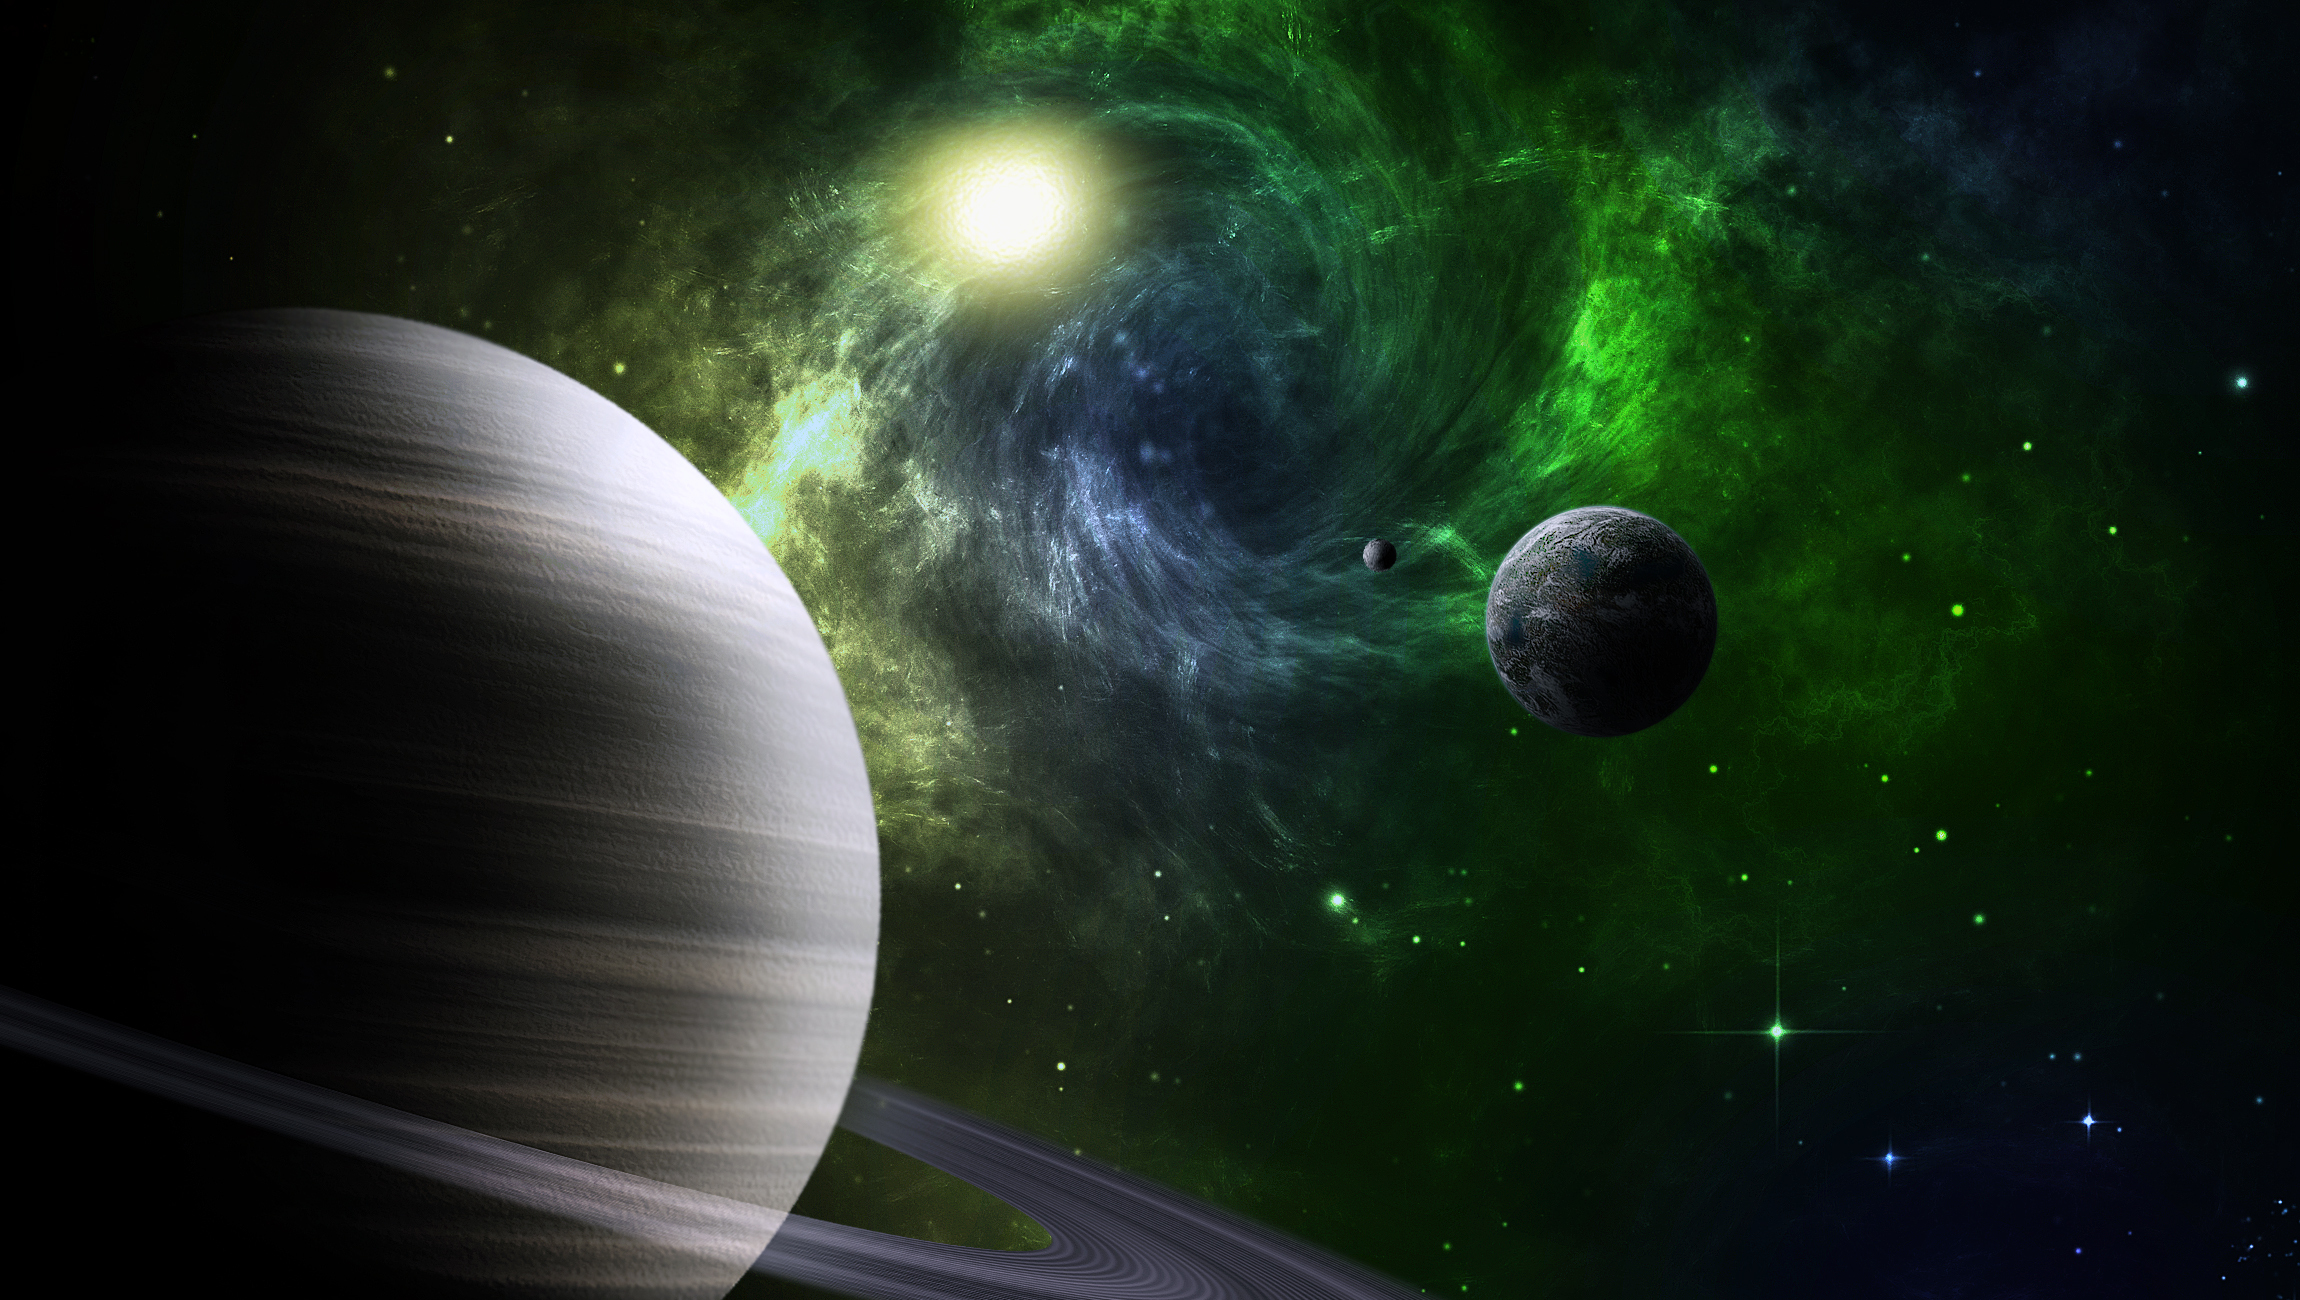 Обои Планета с кольцами звезды вид с земли спутники картинки на рабочий стол на тему Космос - скачать скачать